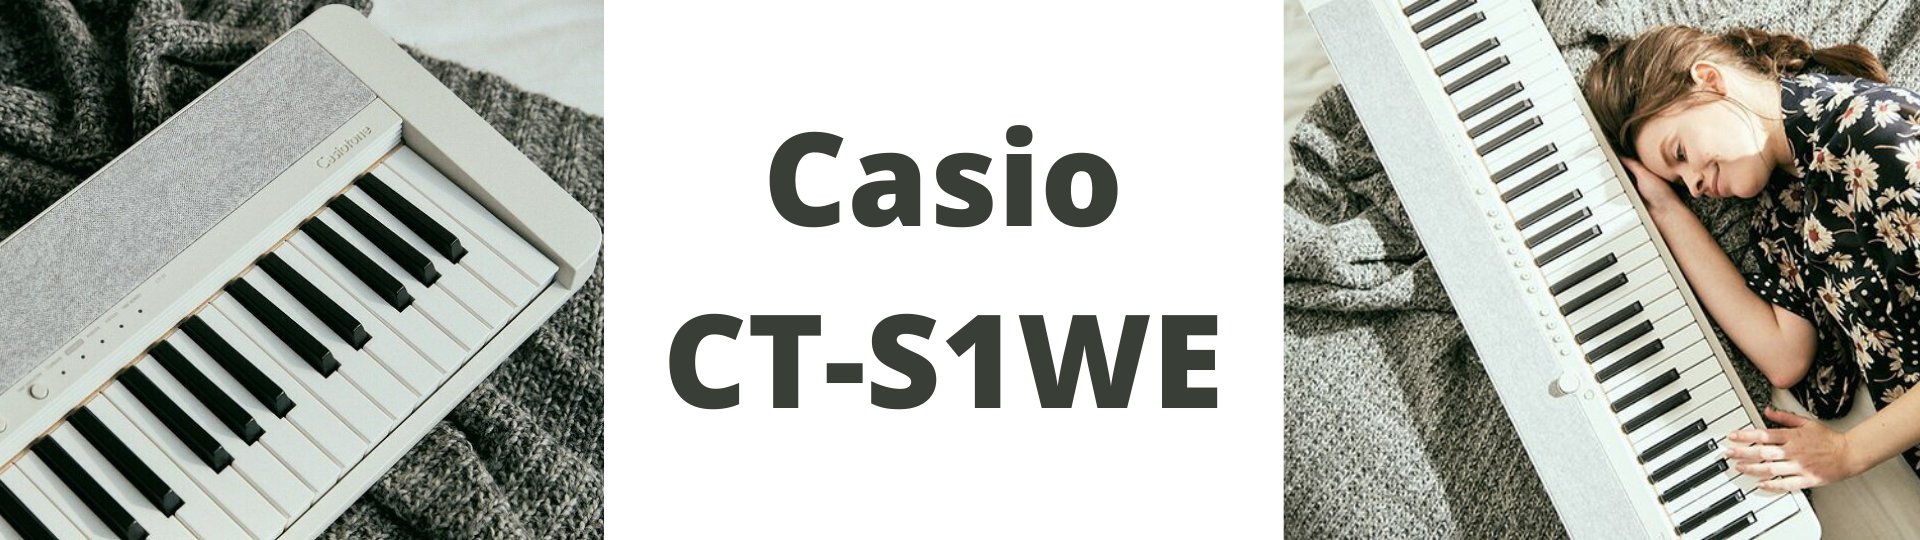 Casio CT-S1WE